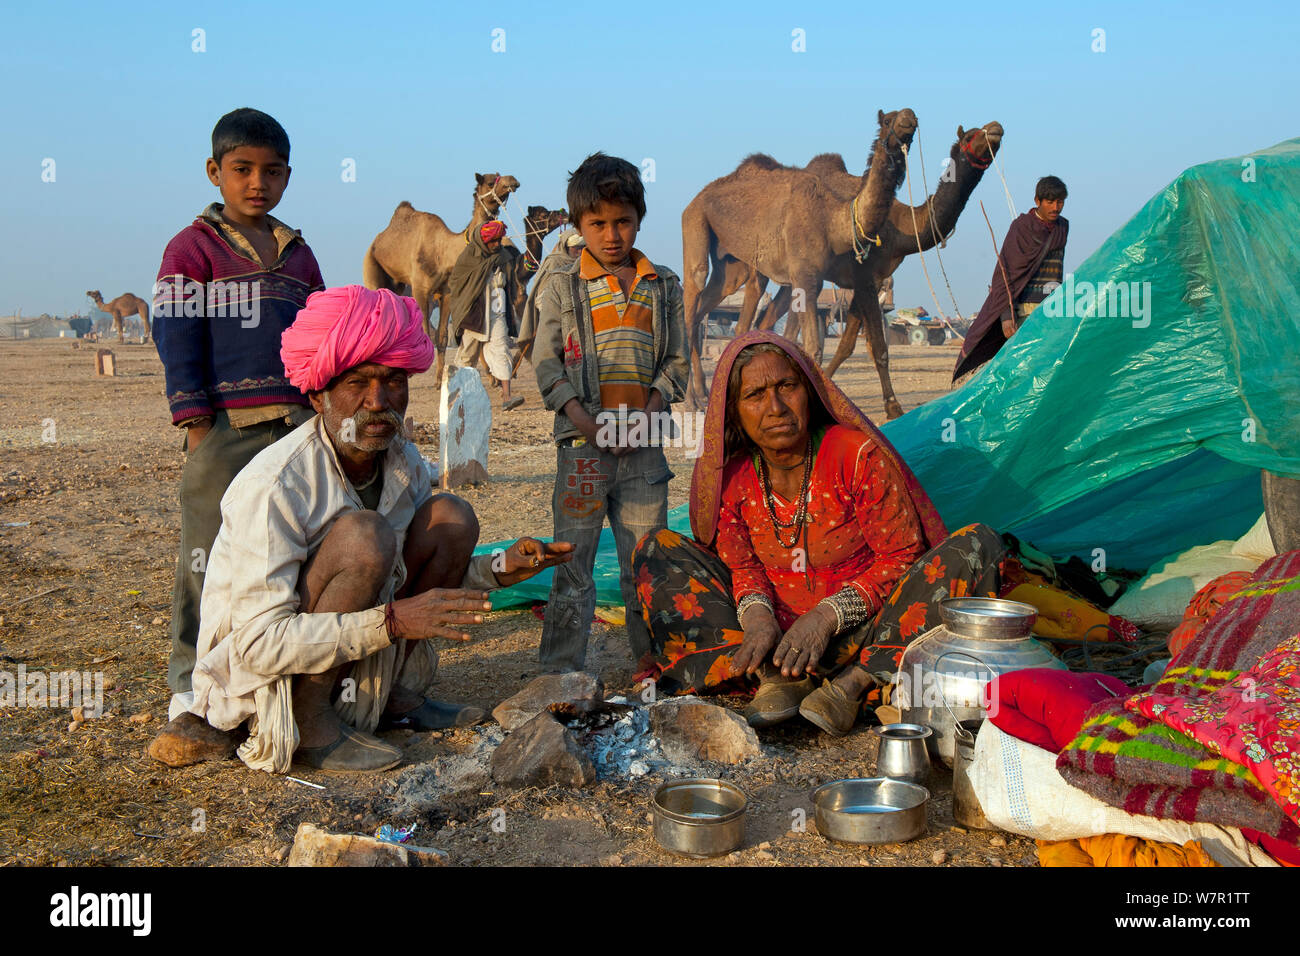 Kamelhirten mit Dromedar (Camelus dromedarius) am Viehmarkt, Wüste Thar, Rajasthan, Indien Stockfoto